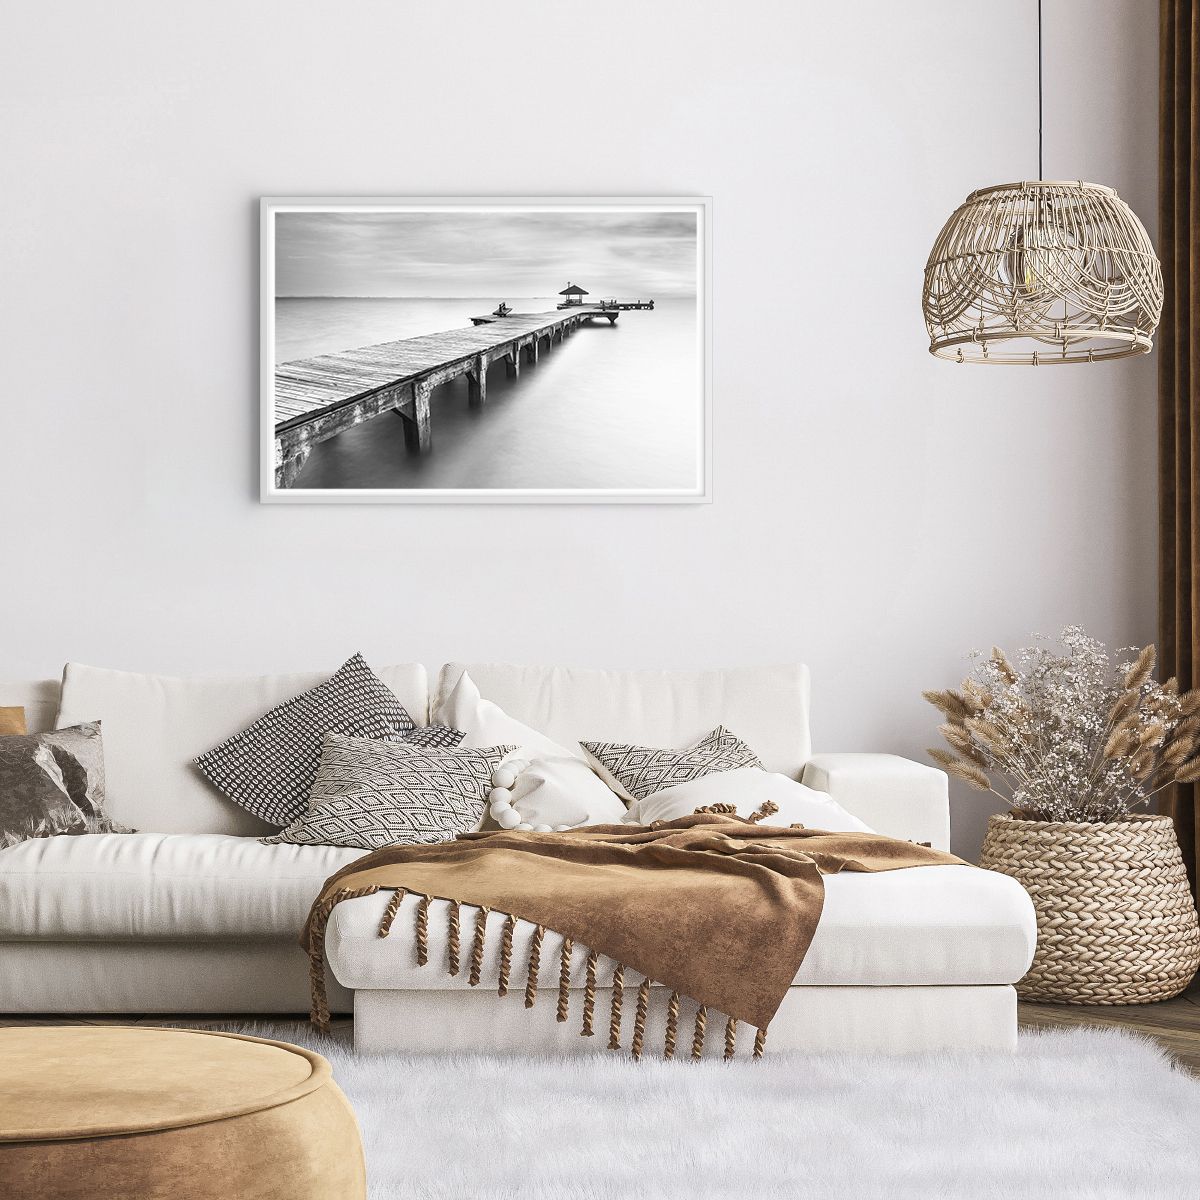 Poster in einem weißen Rahmen Landschaft, Poster in einem weißen Rahmen Meer, Poster in einem weißen Rahmen Holzbrücke, Poster in einem weißen Rahmen Ozean, Poster in einem weißen Rahmen Schwarz Und Weiß